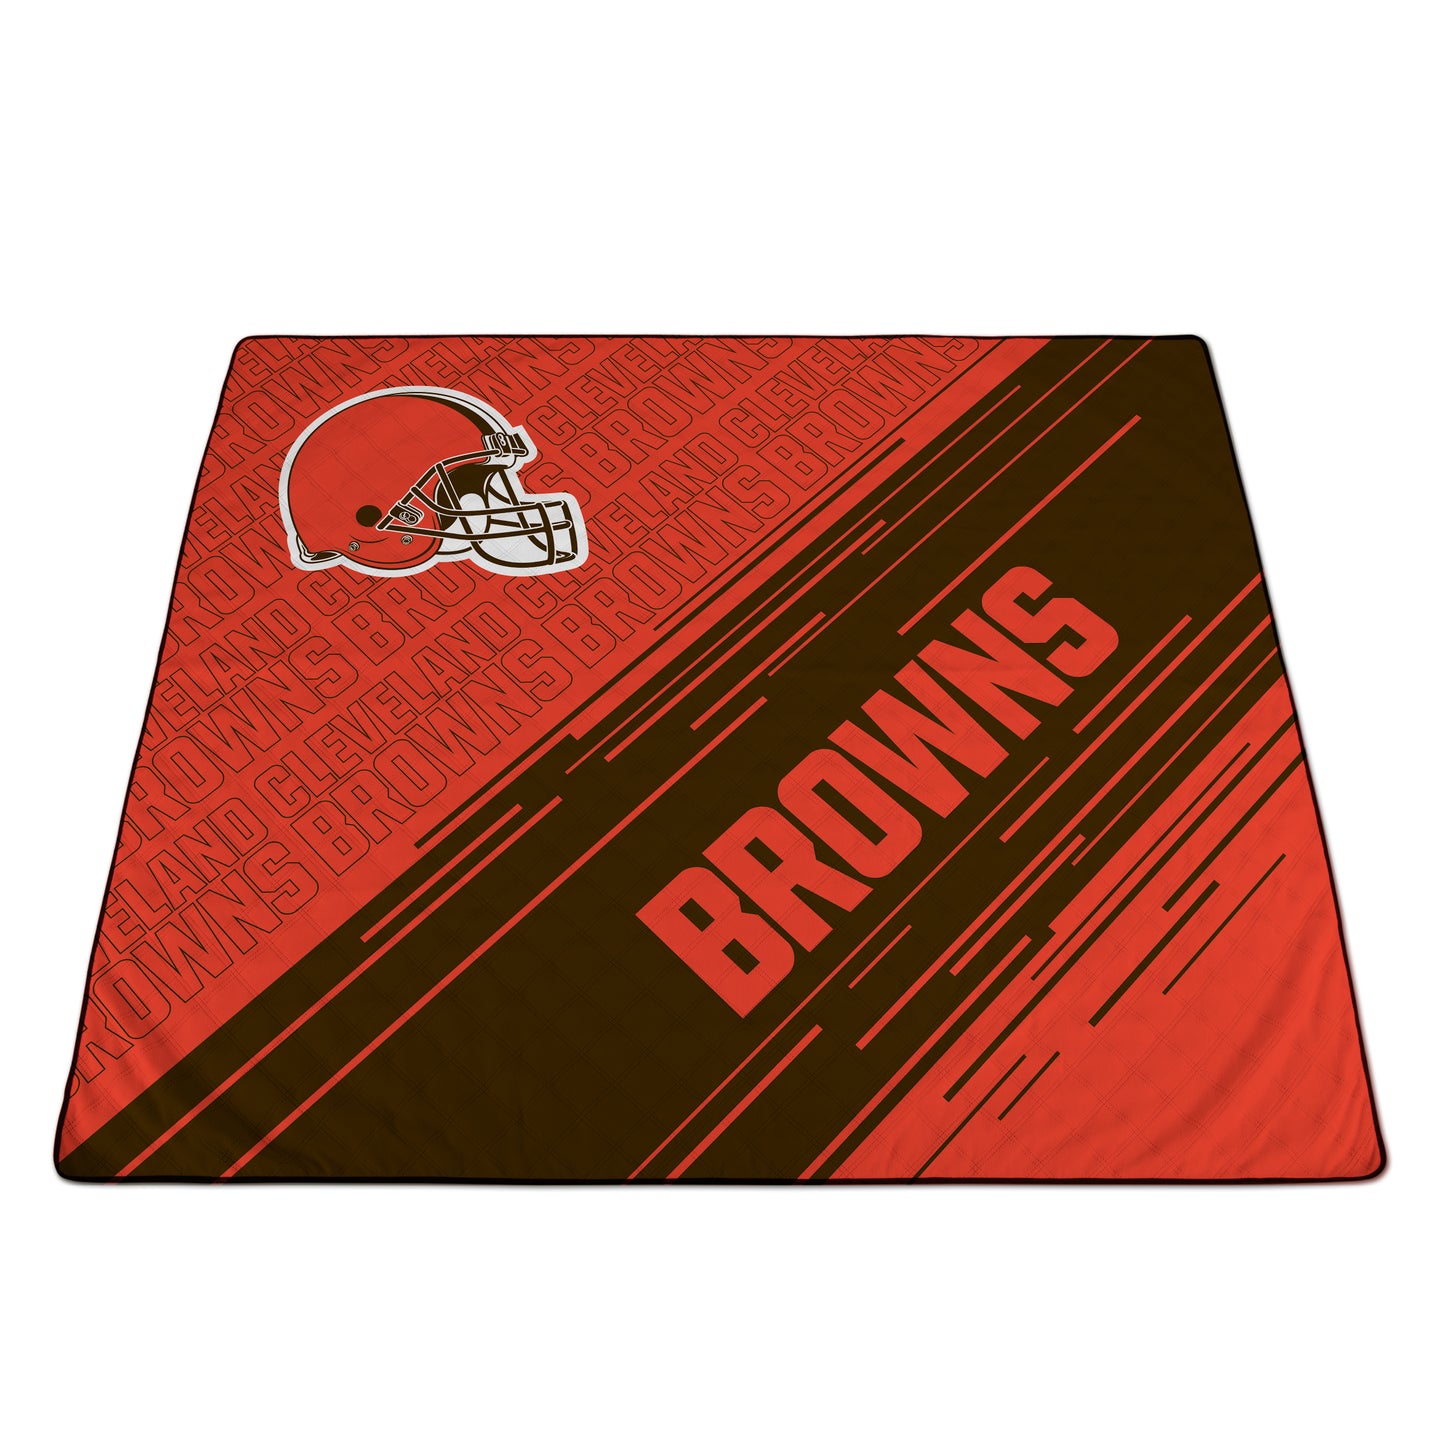 Cleveland Browns - Impresa Picnic Blanket